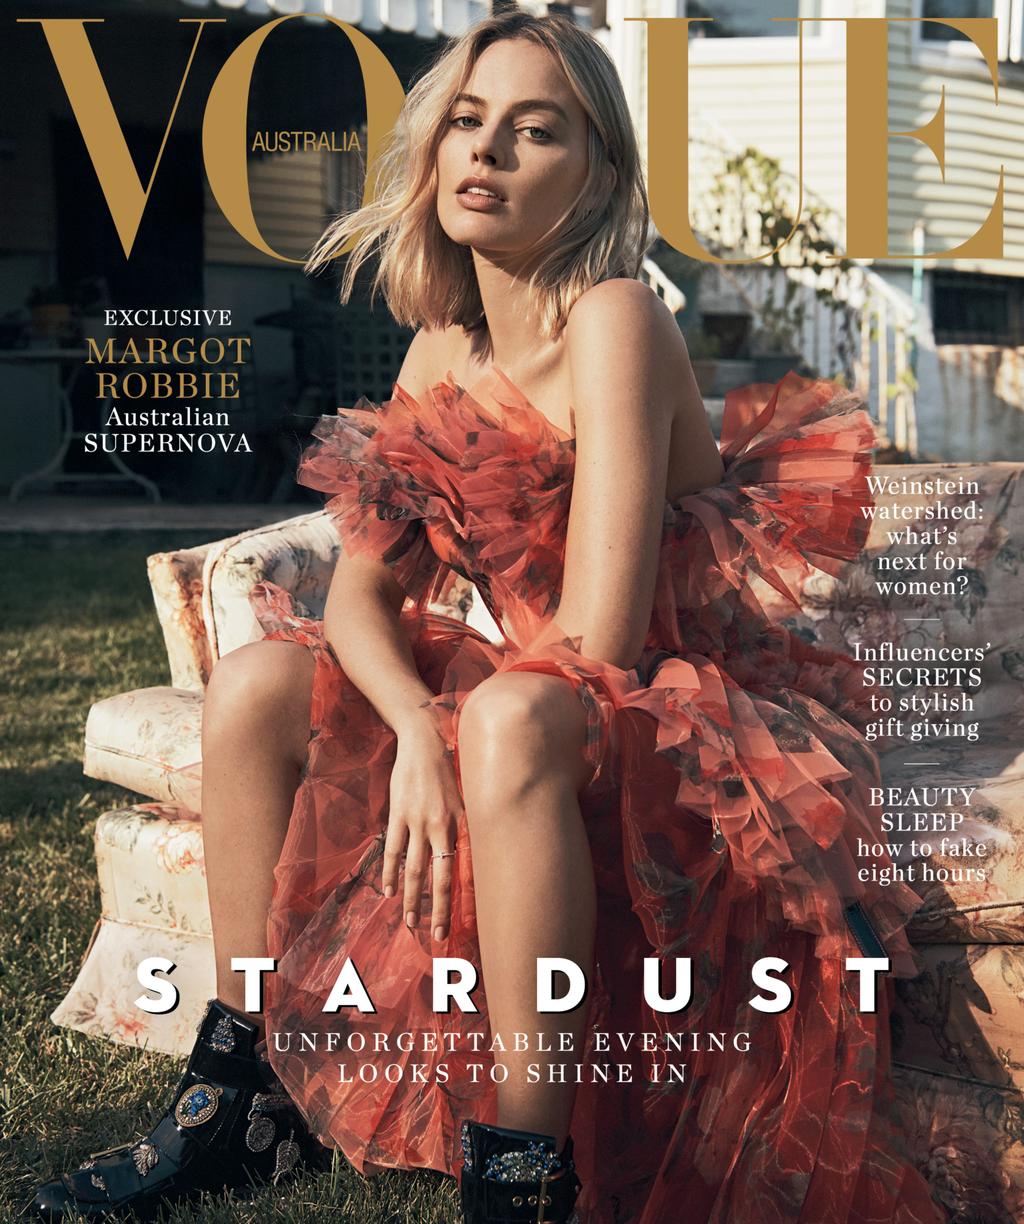 Vogue's Covers: Vogue Australia